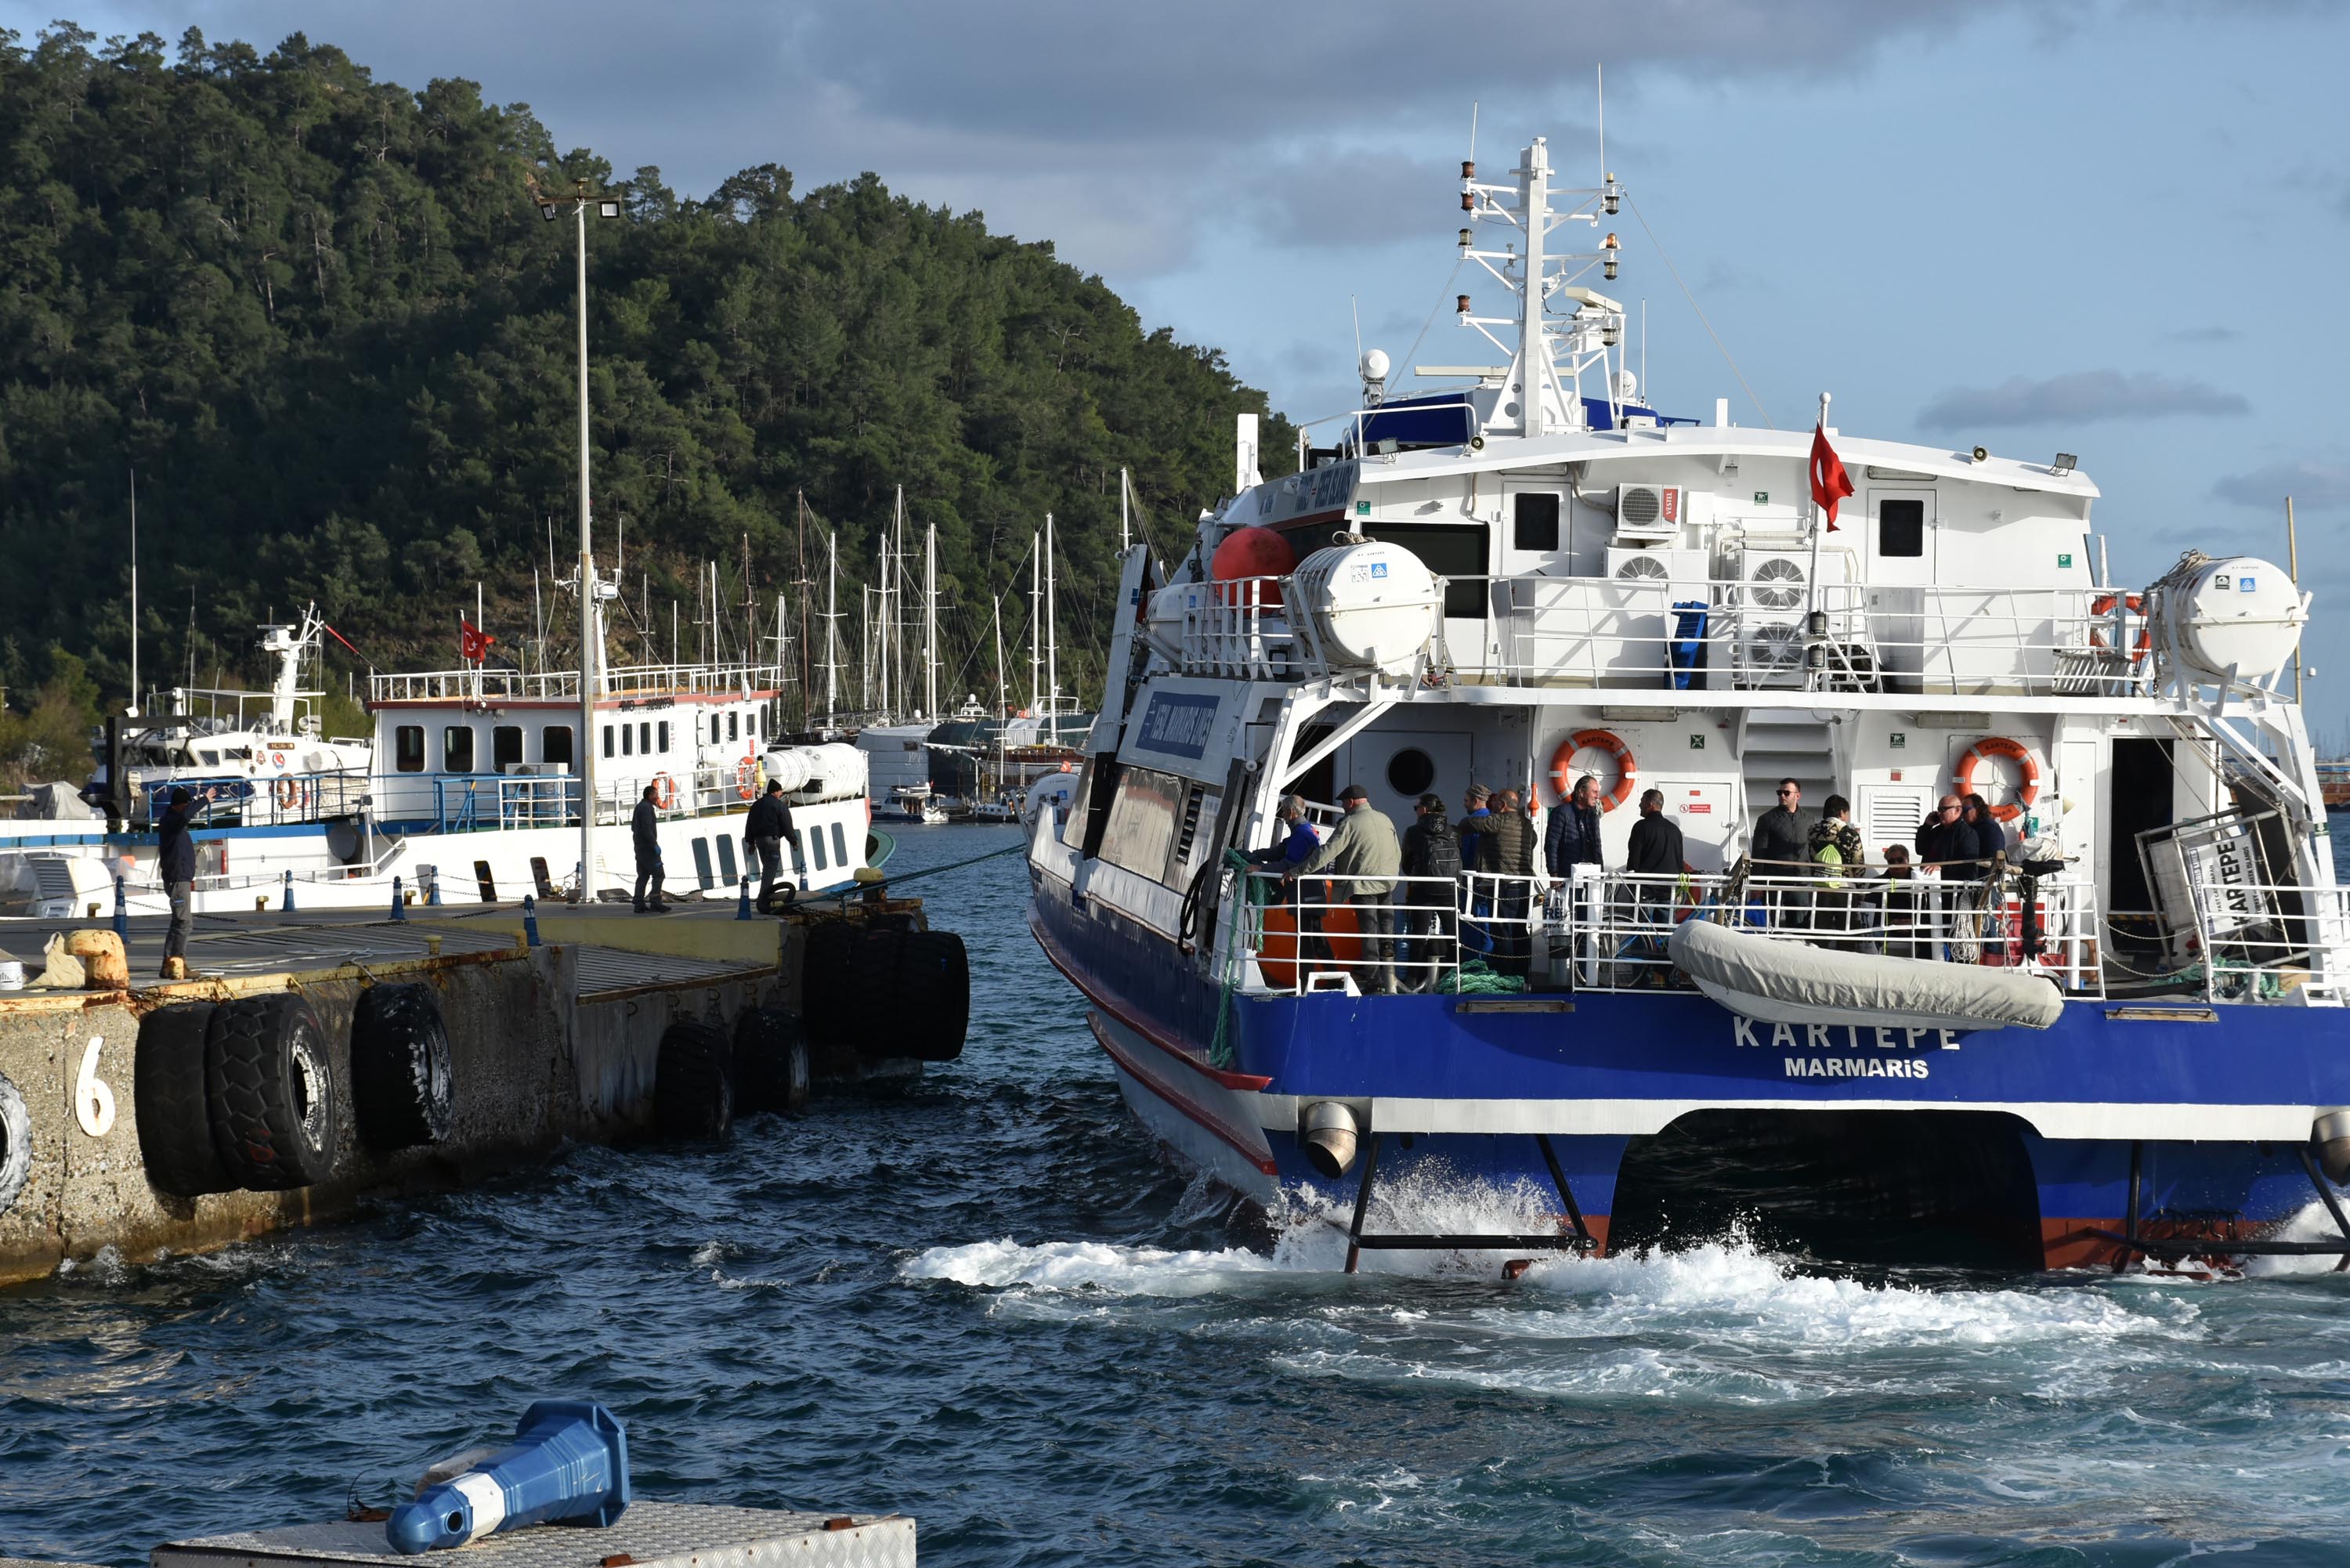 Marmaris-Rodos feribot seferleri geçici olarak durduruldu